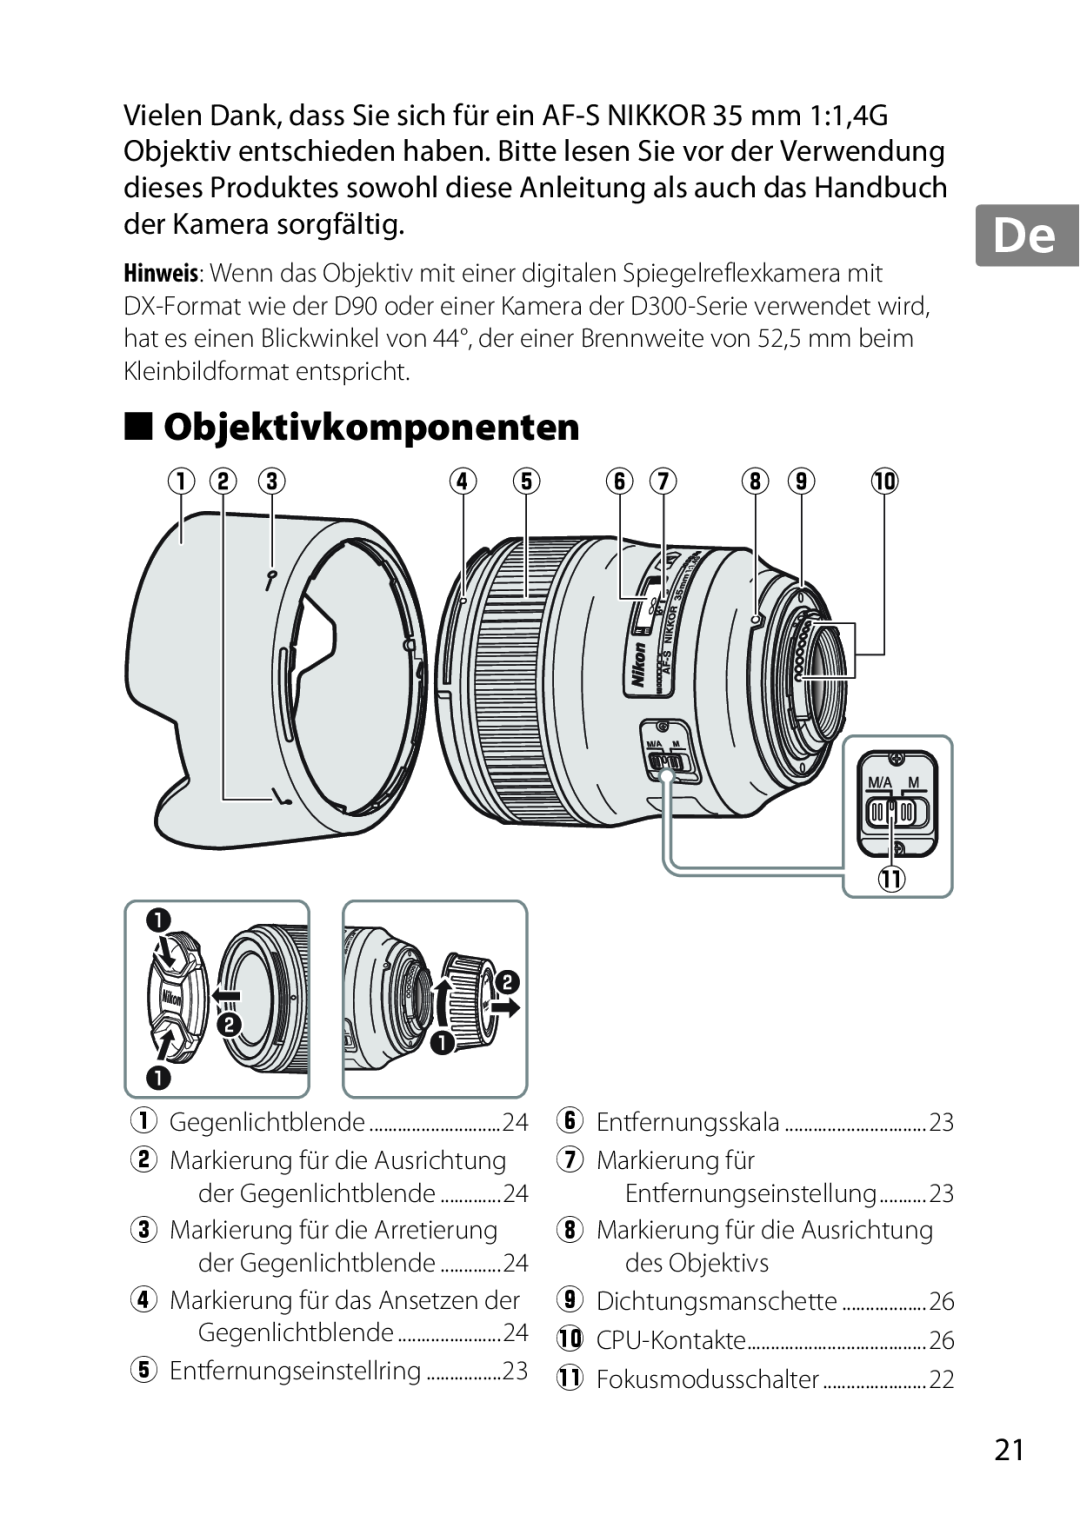 Nikon 35mmf14G, AF-S, 35mm f/1.4G, 2198 user manual Objektivkomponenten, q w e, y u i o !0 1 